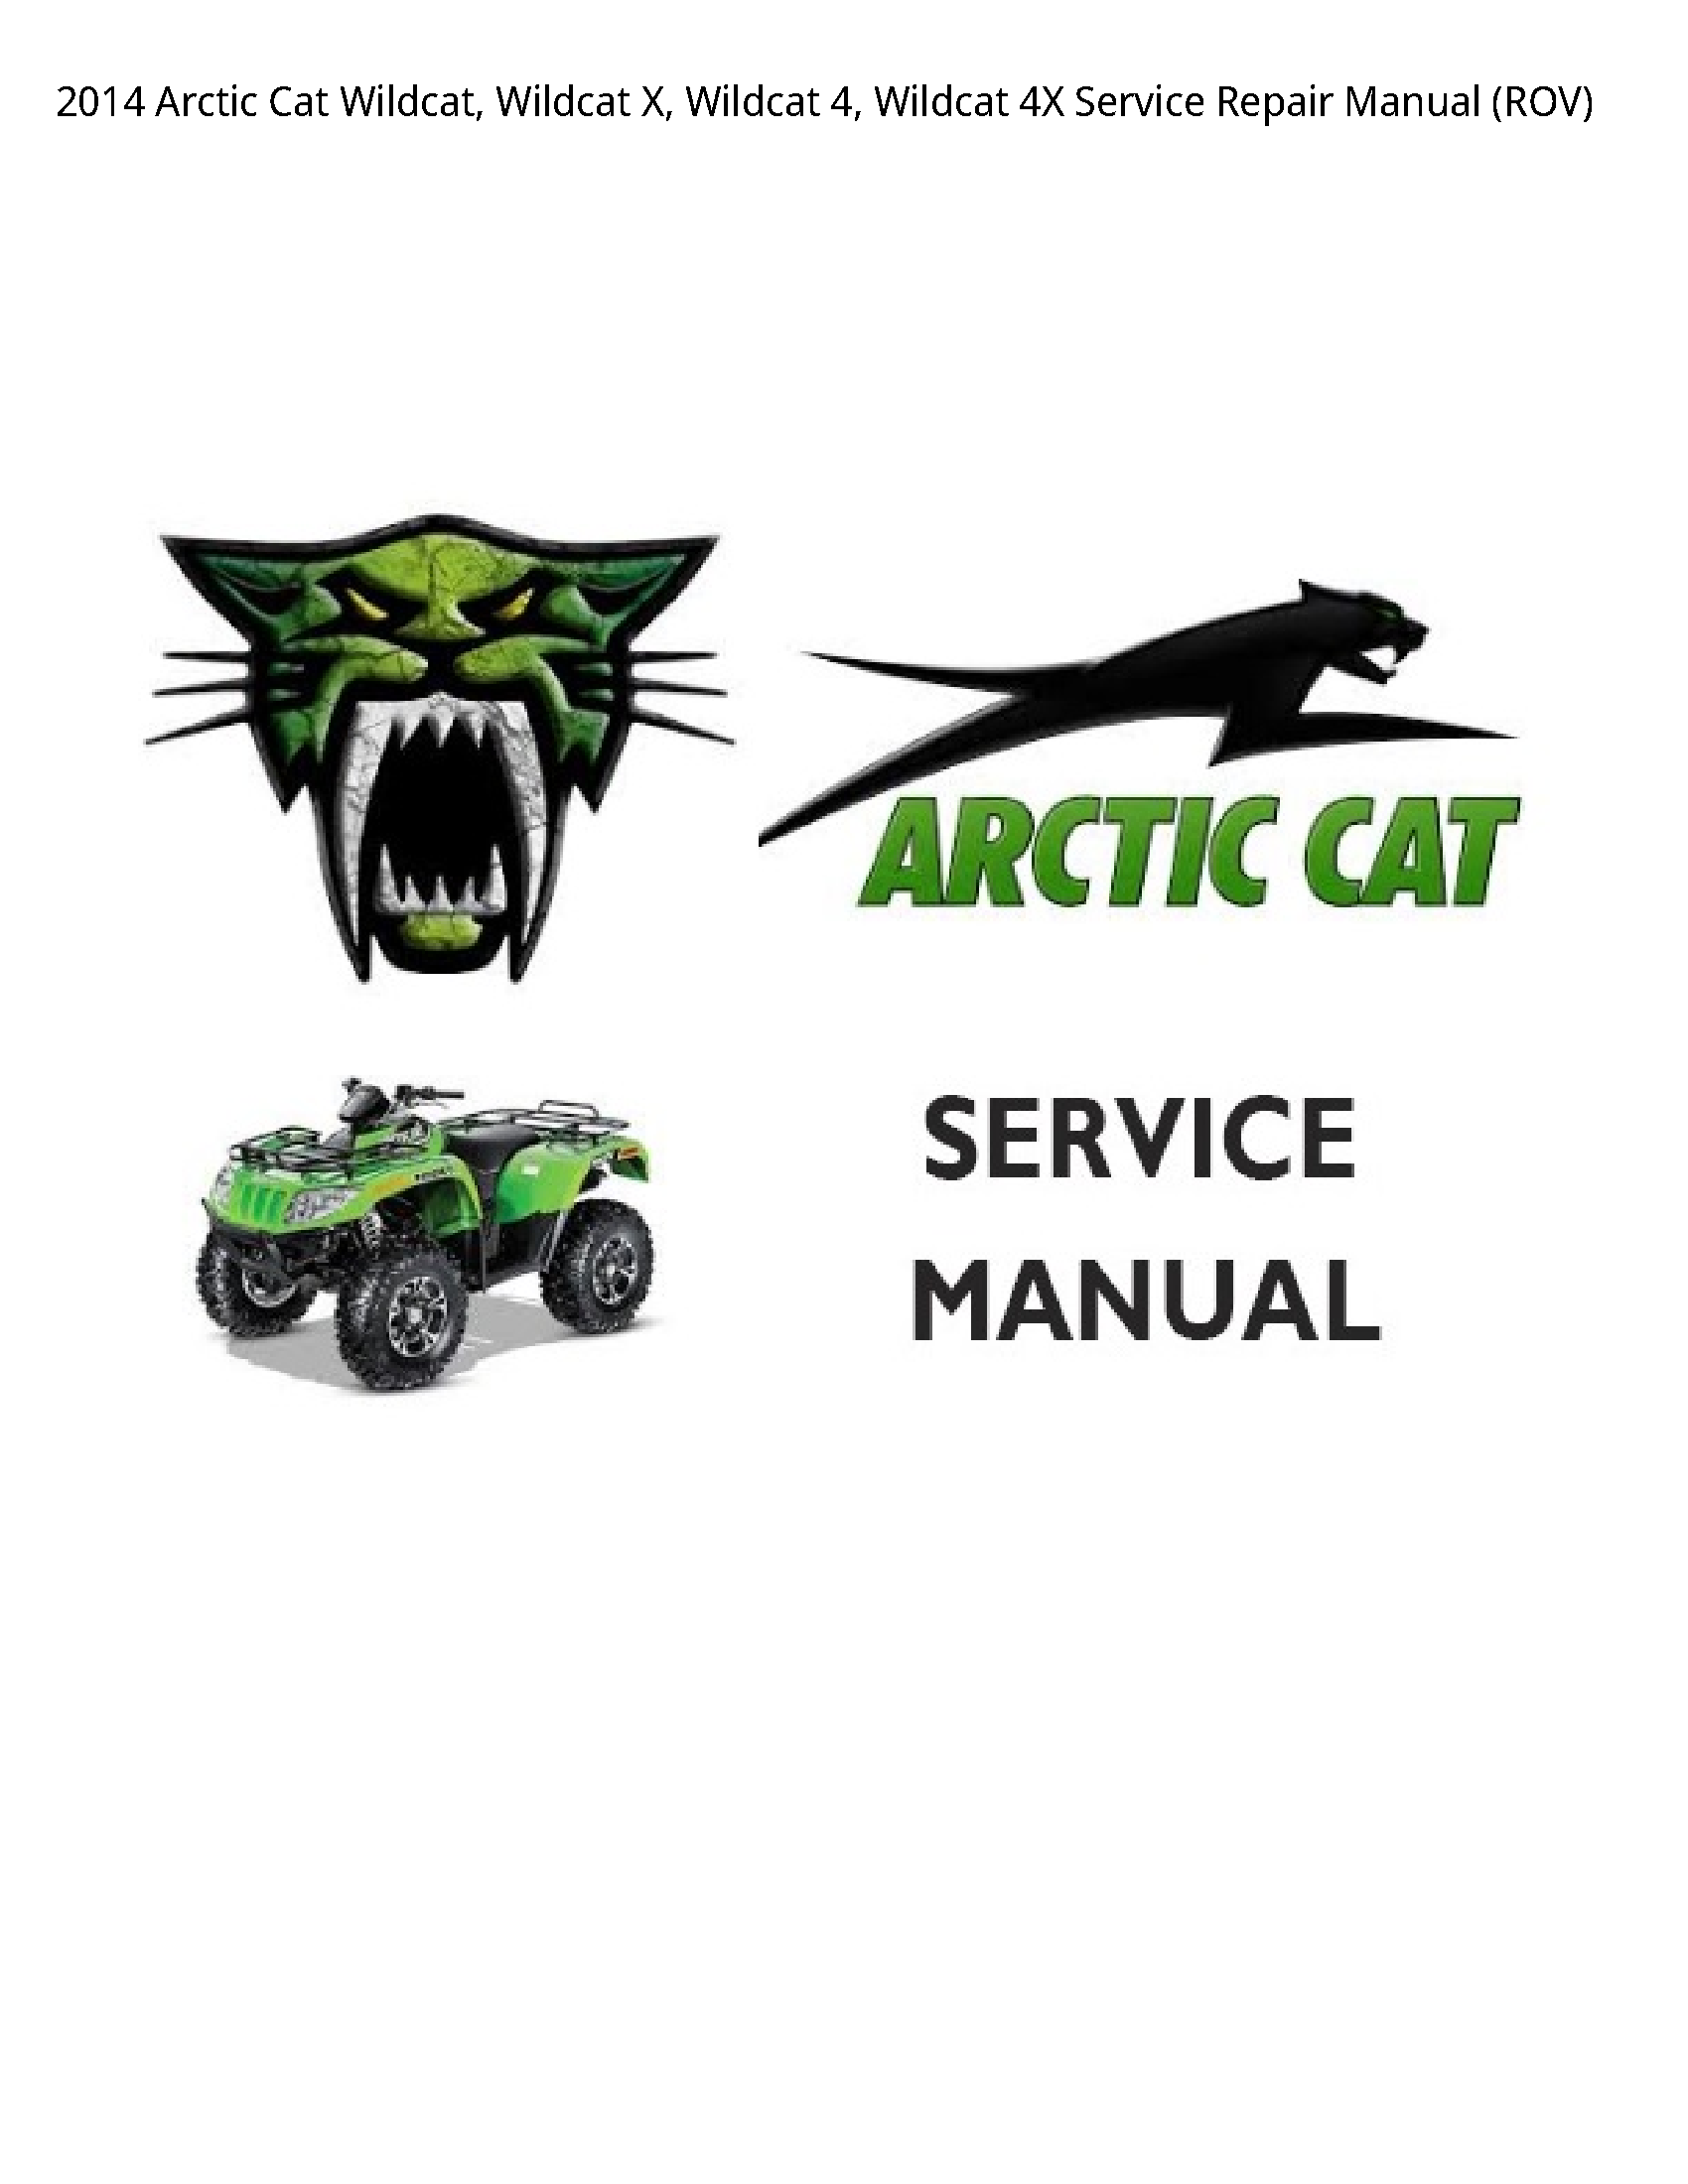 Arctic Cat 4 Wildcat manual